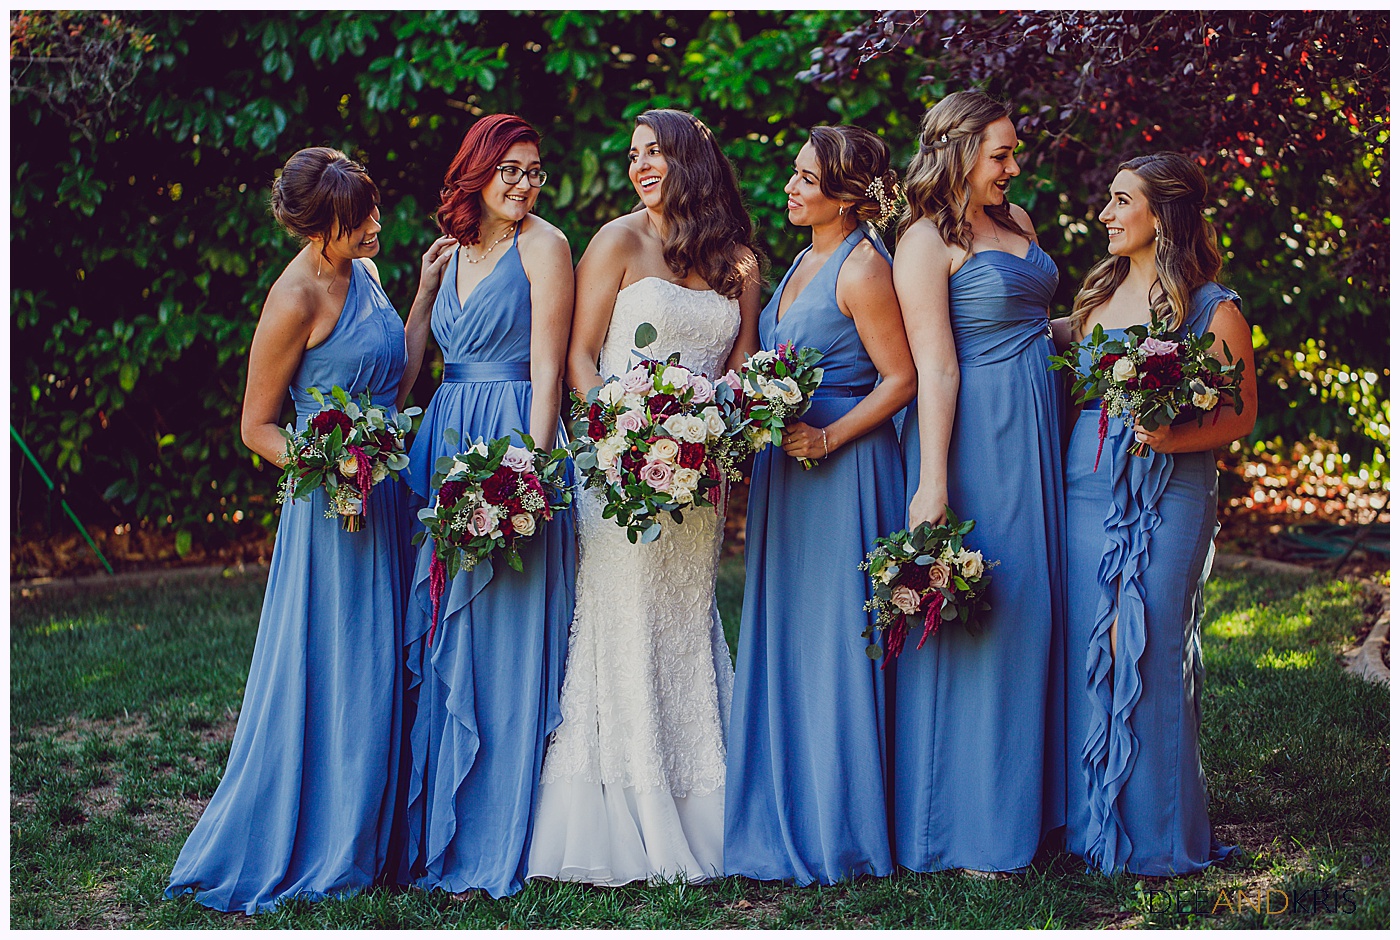 Classic blue bridesmaid dresses